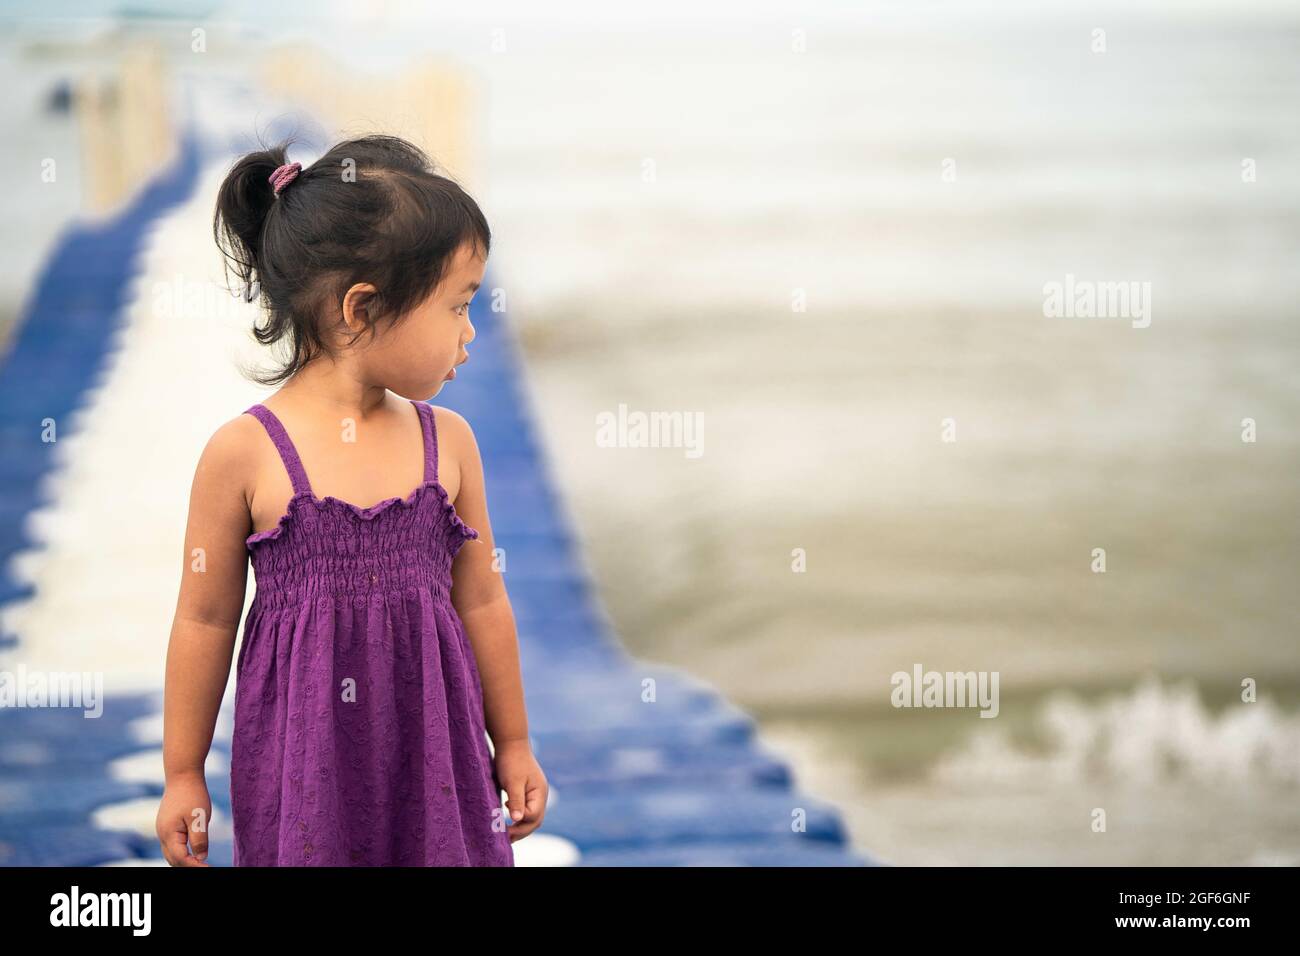 Niedliches kleines Thai-Mädchen, das auf einem modularen schwimmenden Dock aus Kunststoff läuft Stockfoto